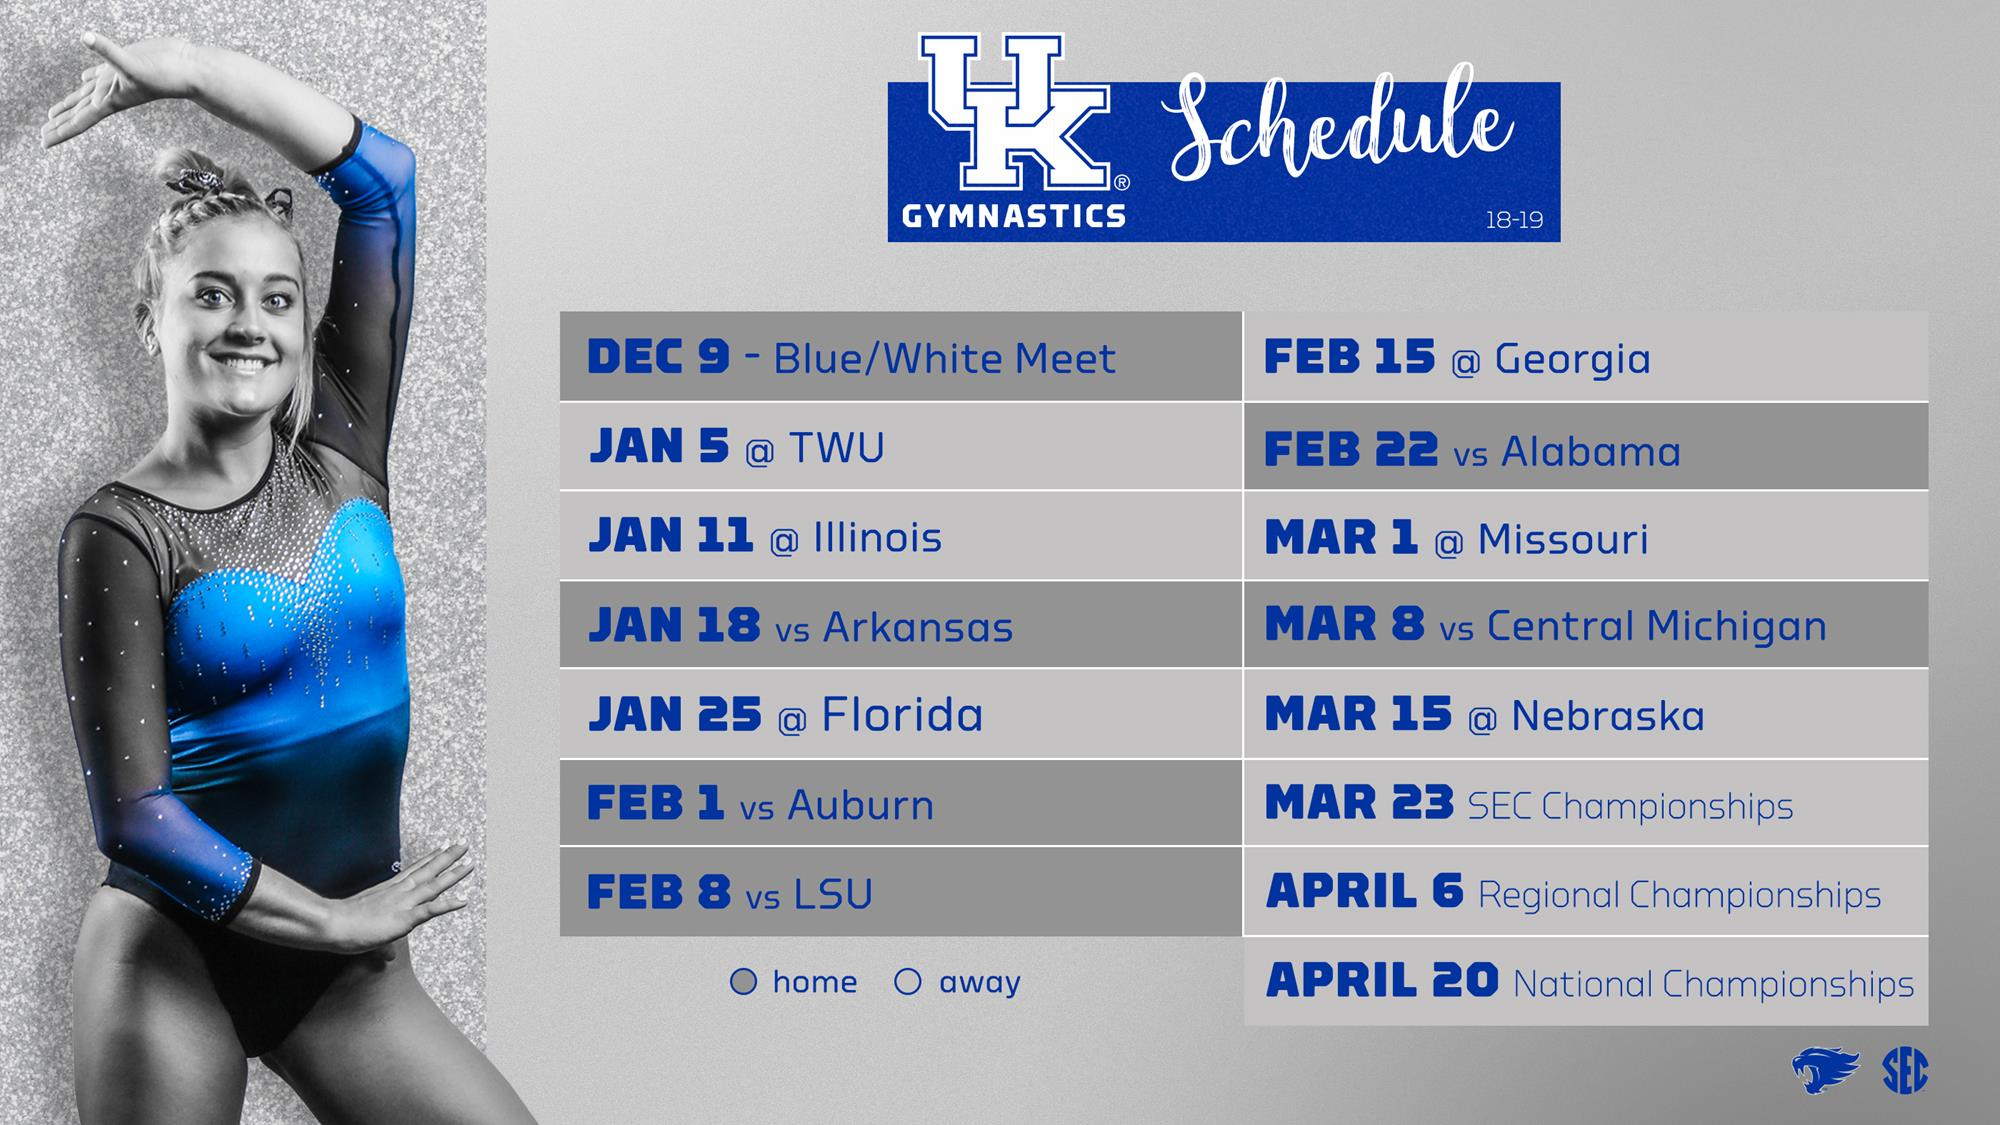 Kentucky Gymnastics Releases 2019 Schedule